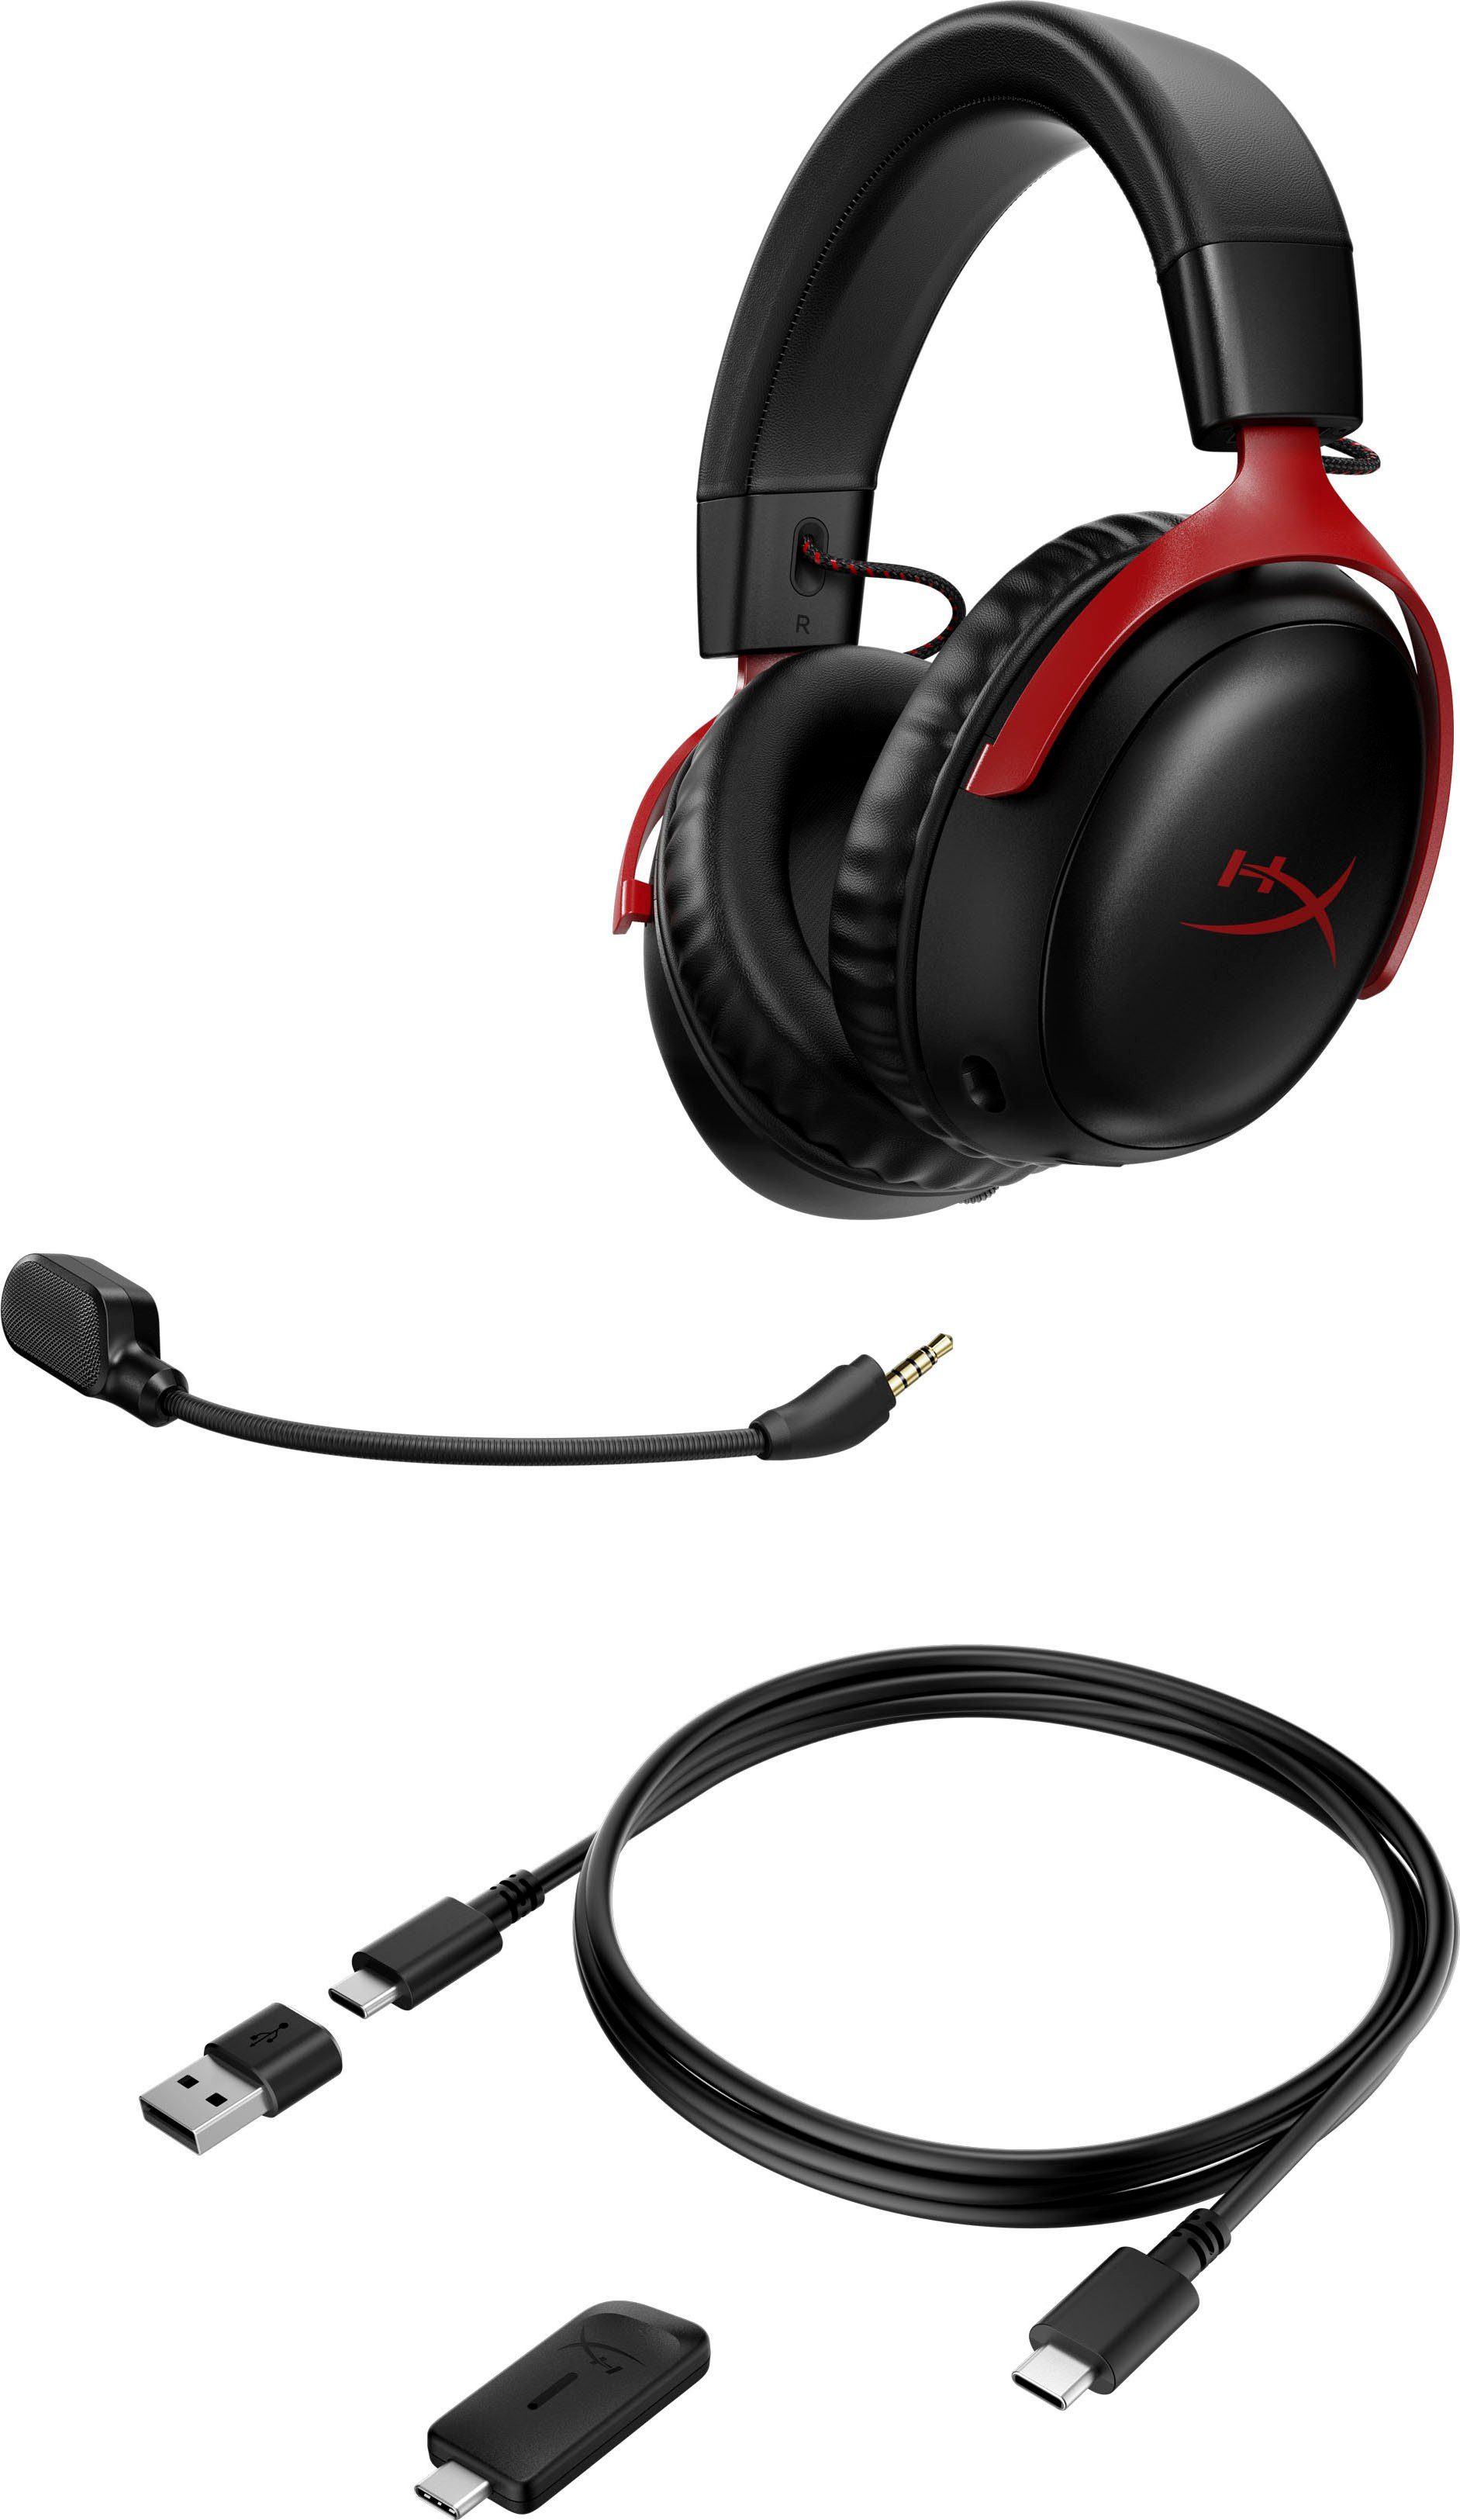 schwarz/rot Cloud Wireless (Geräuschisolierung, Wireless) HyperX III Gaming-Headset